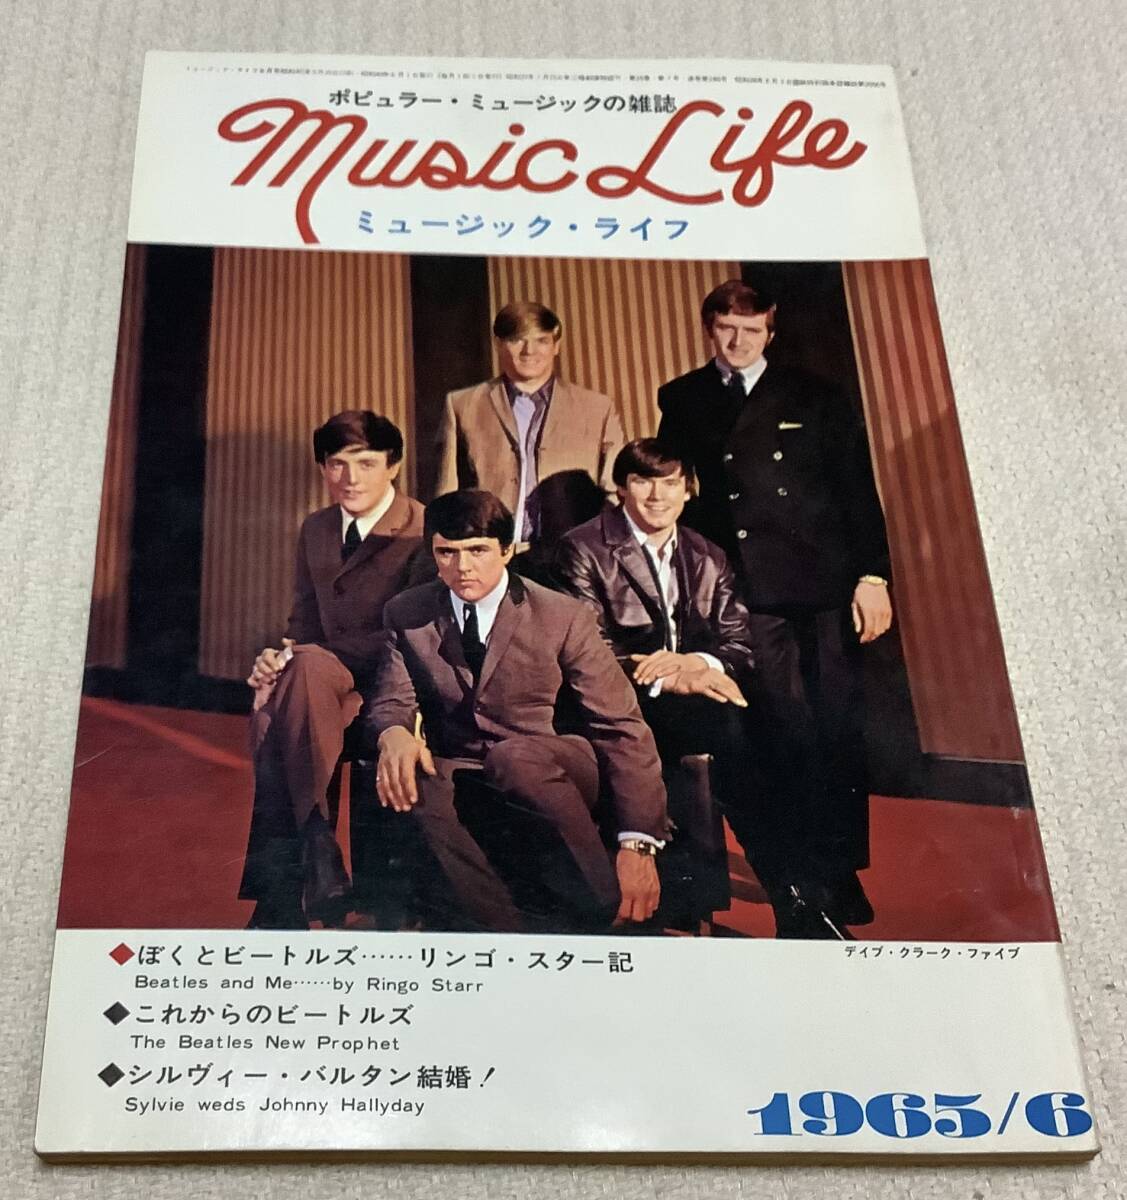 ポピュラー・ミュージックの雑誌 ミュージック・ライフ 1965年6月号 music life 昭和40 古本 雑誌 デイヴ・クラーク・ファイブの画像1